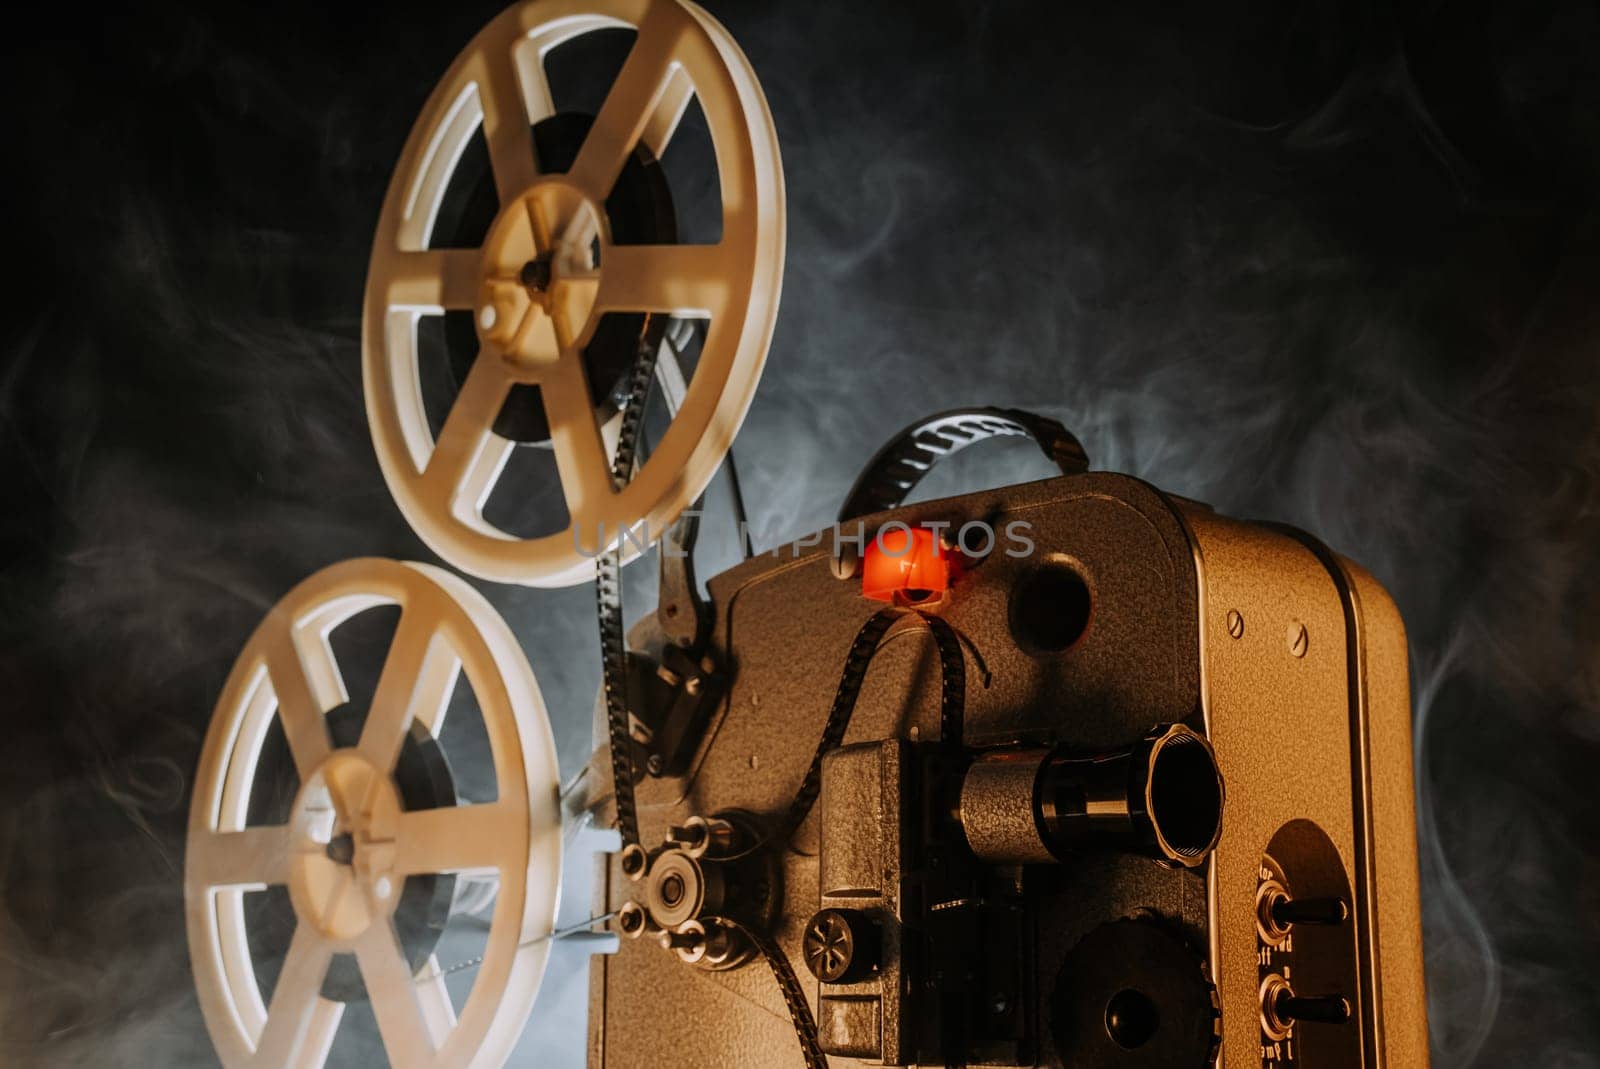 Obsolete film projector, retro home theatre entertainment. Nostalgia, memories by kristina_kokhanova